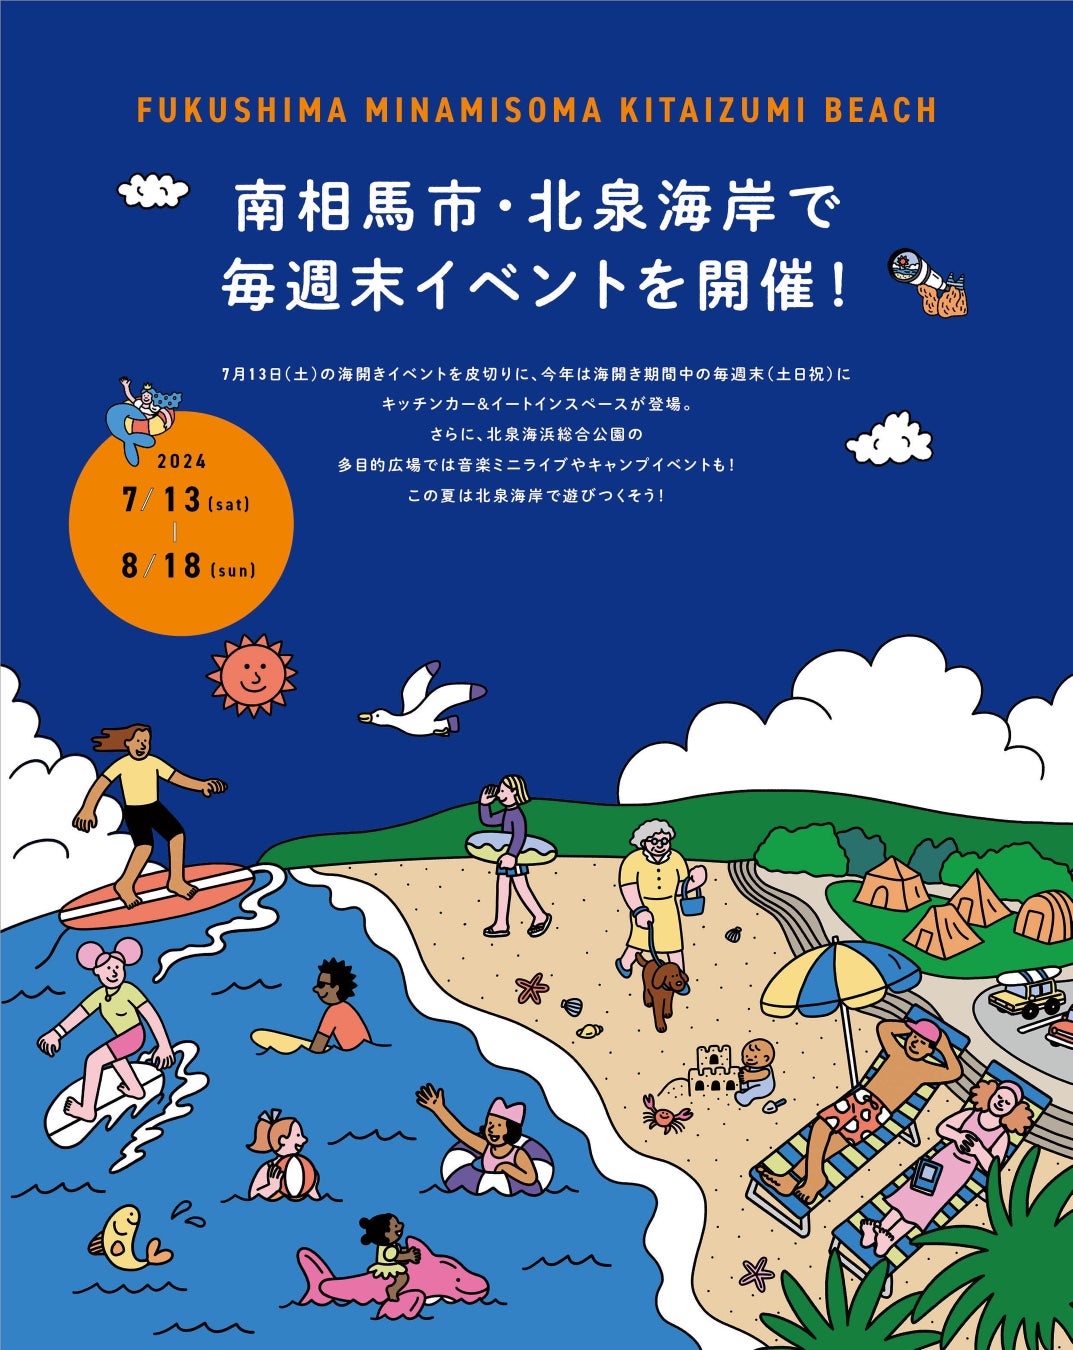 福島県南相馬市・北泉海岸を舞台に、サーフイベントを続々プロデュース。